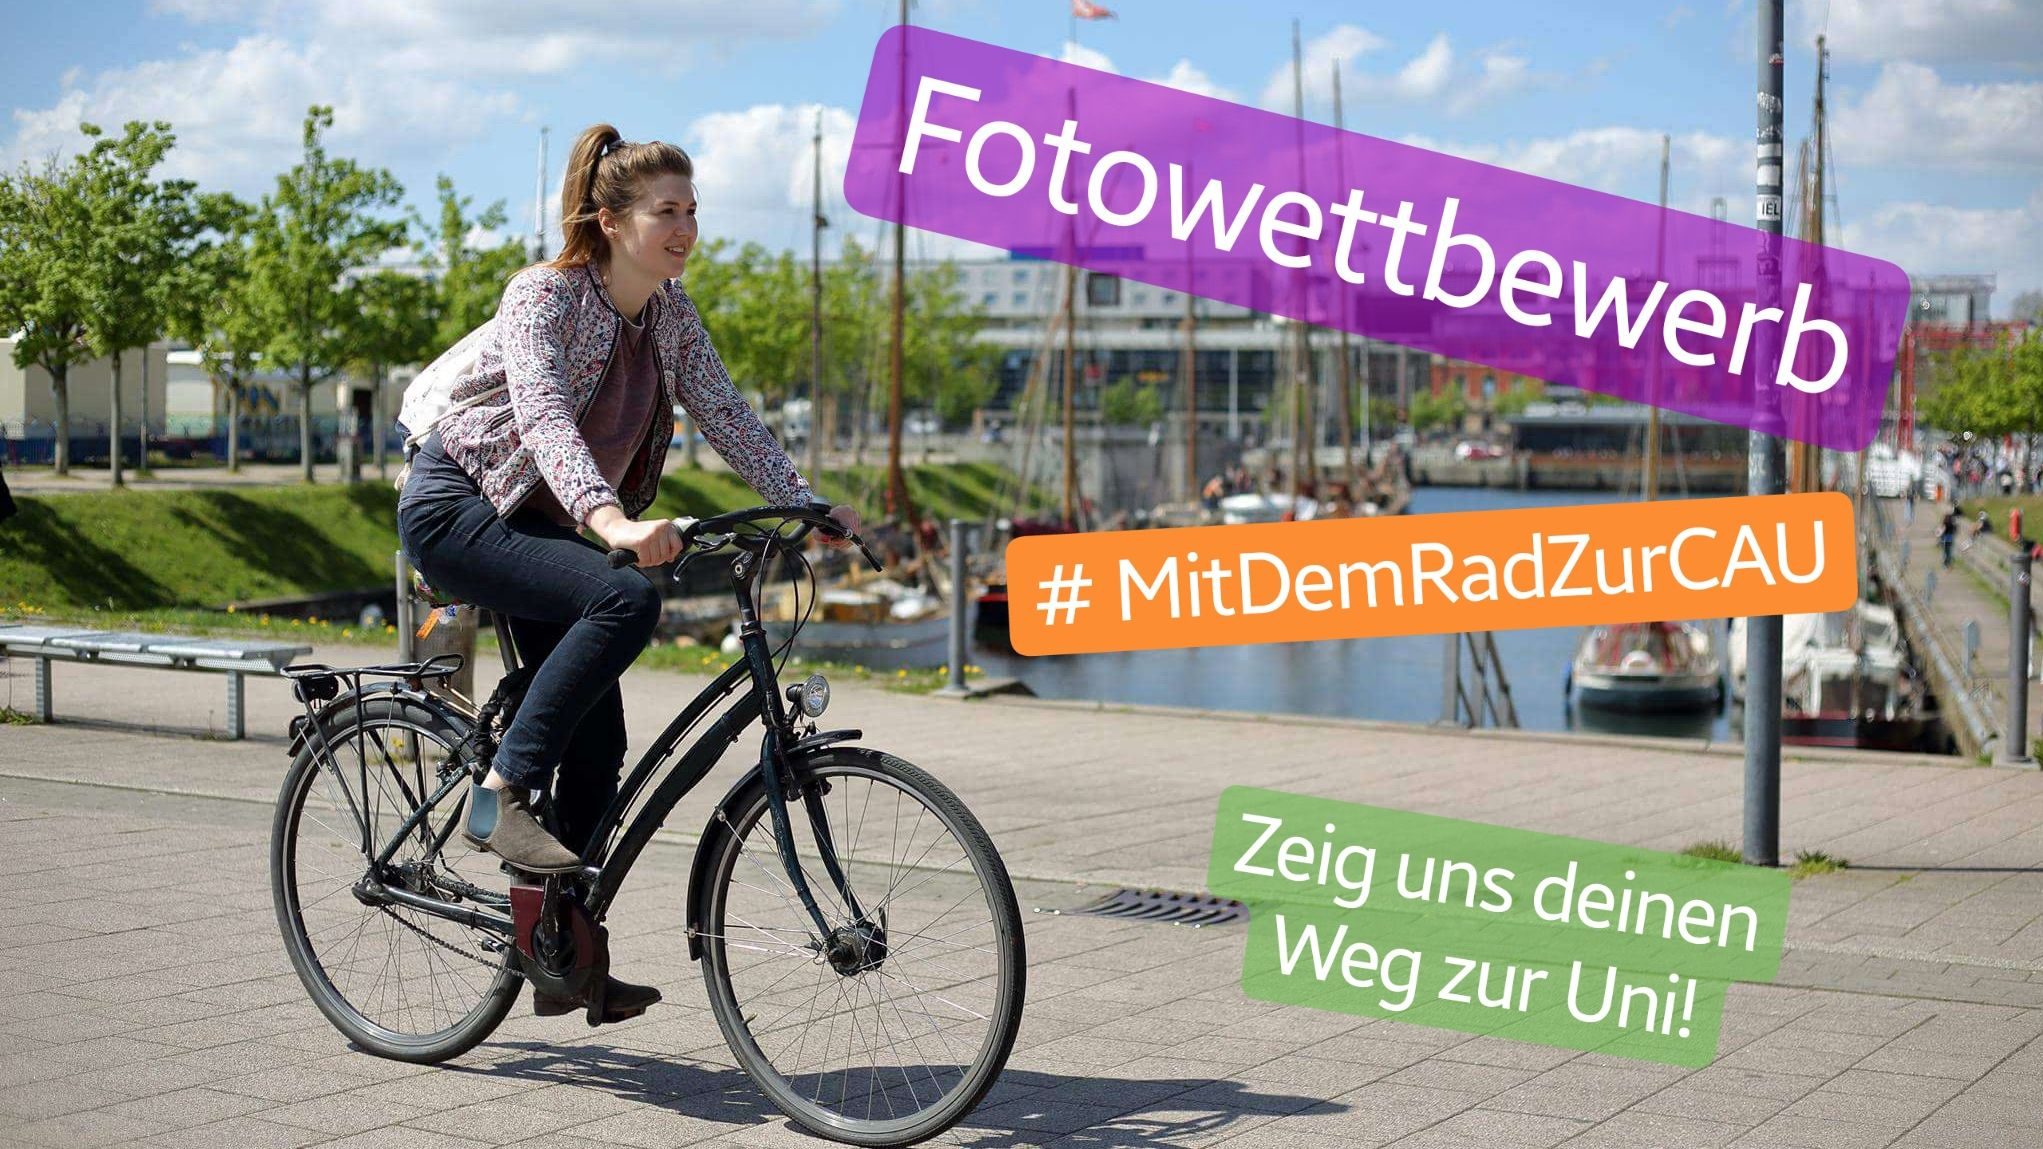 #mitdemRadzurCAU – Fahrrad-Mitmach-Aktion